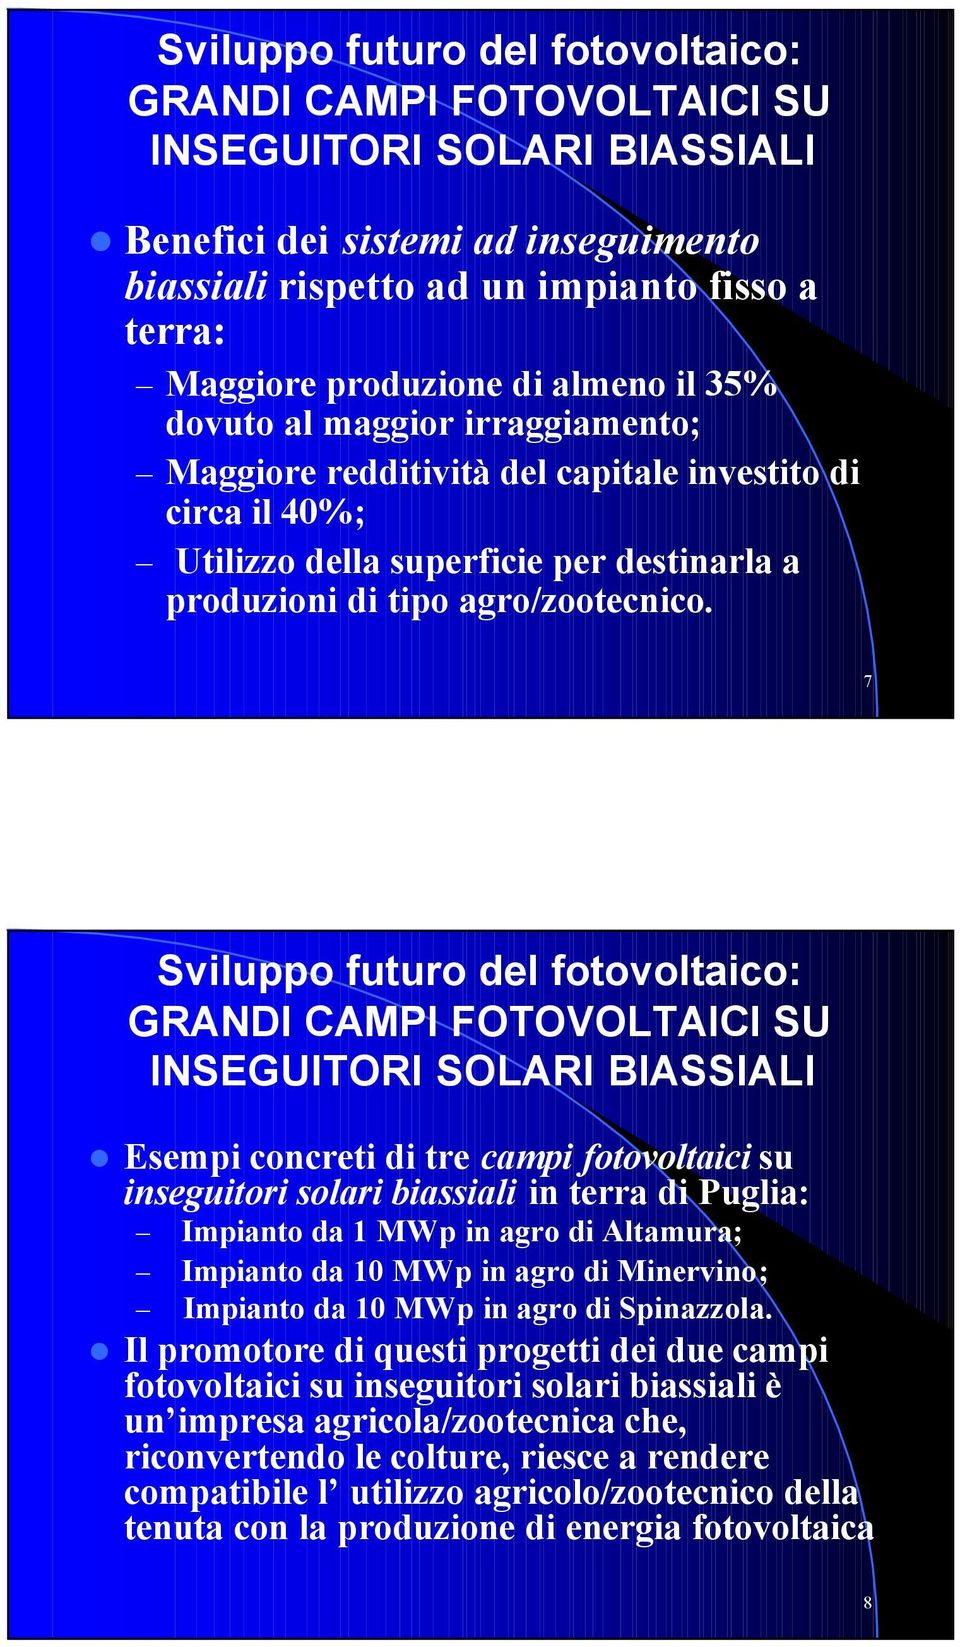 7 Sviluppo futuro del fotovoltaico: GRANDI CAMPI FOTOVOLTAICI SU INSEGUITORI SOLARI BIASSIALI Esempi concreti di tre campi fotovoltaici su inseguitori solari biassiali in terra di Puglia: Impianto da